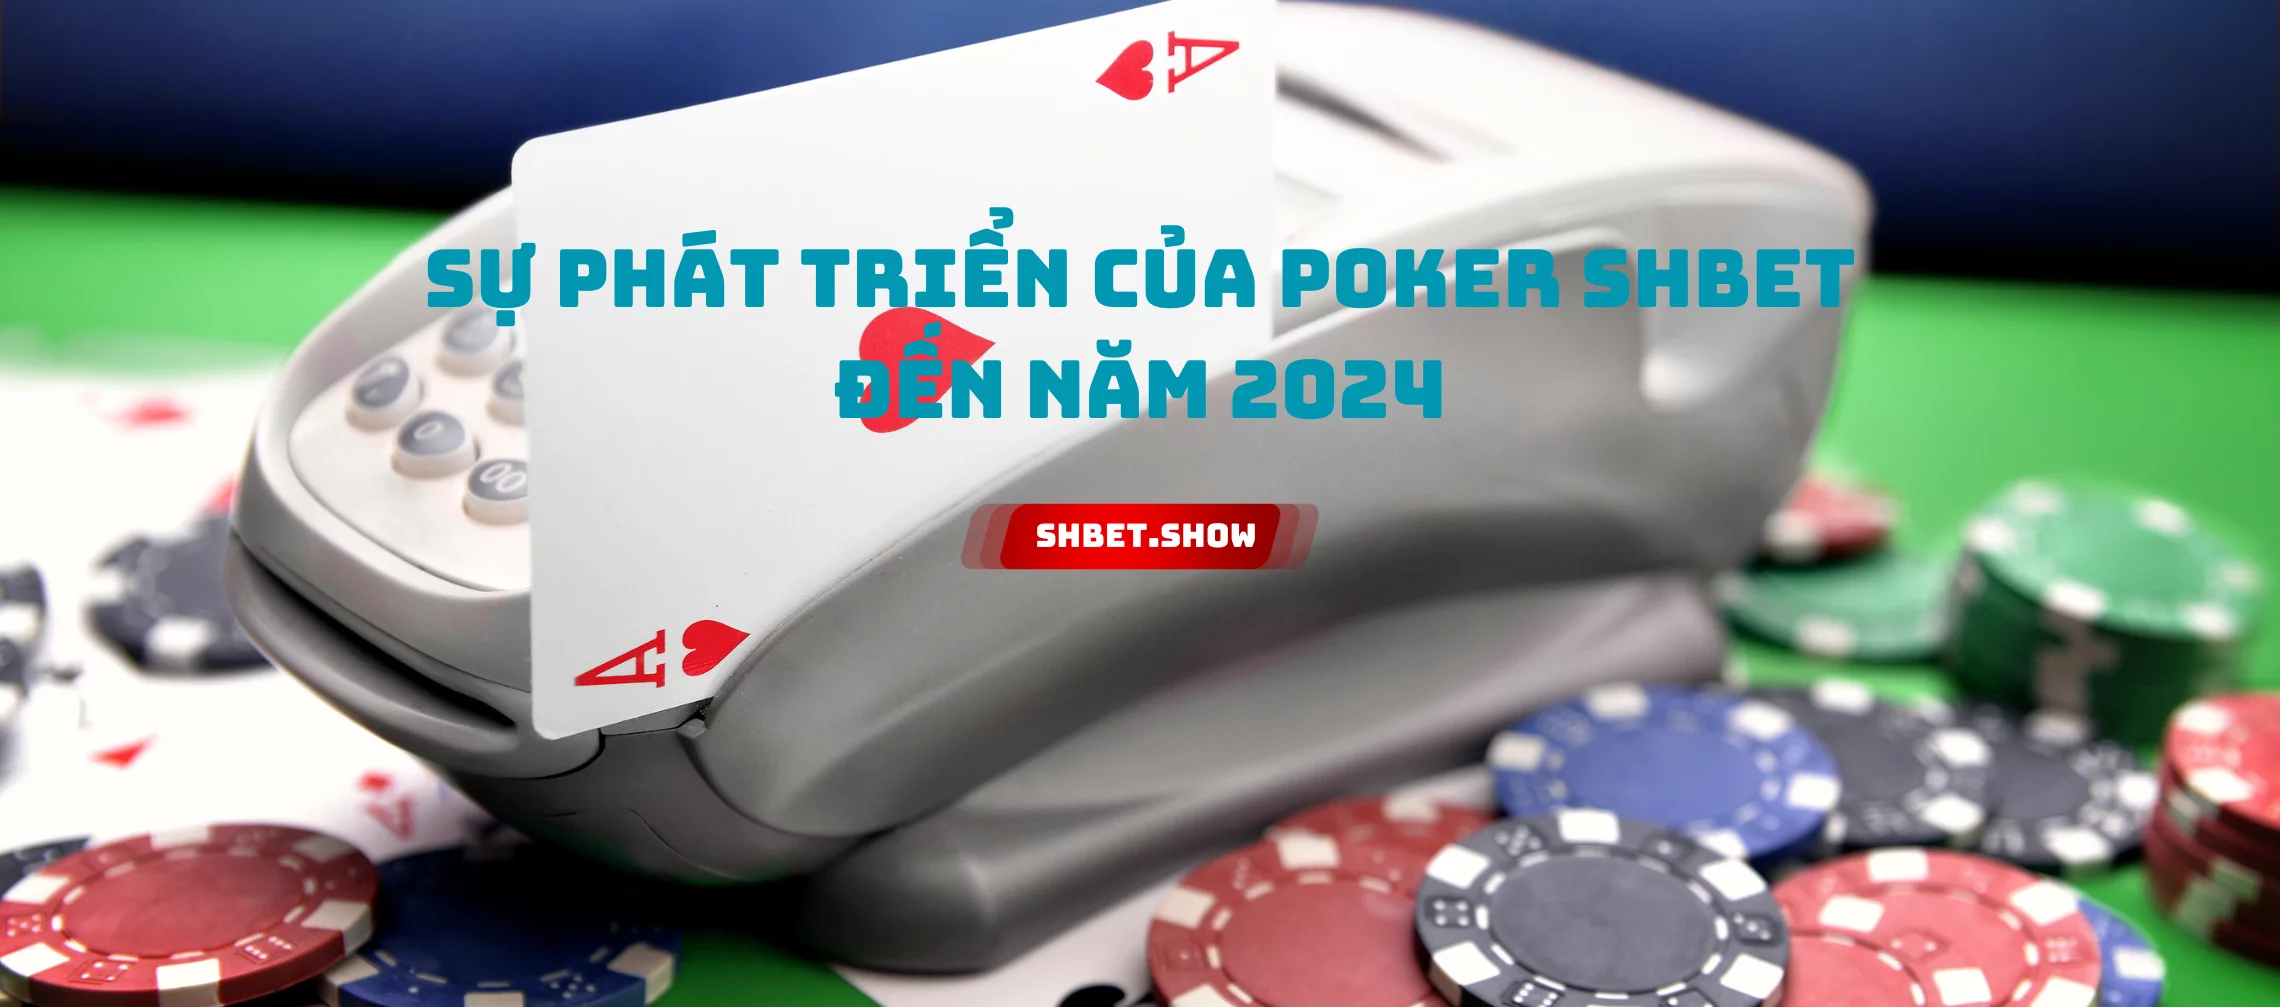 Sự phát triển của Poker shbet đến năm 2024